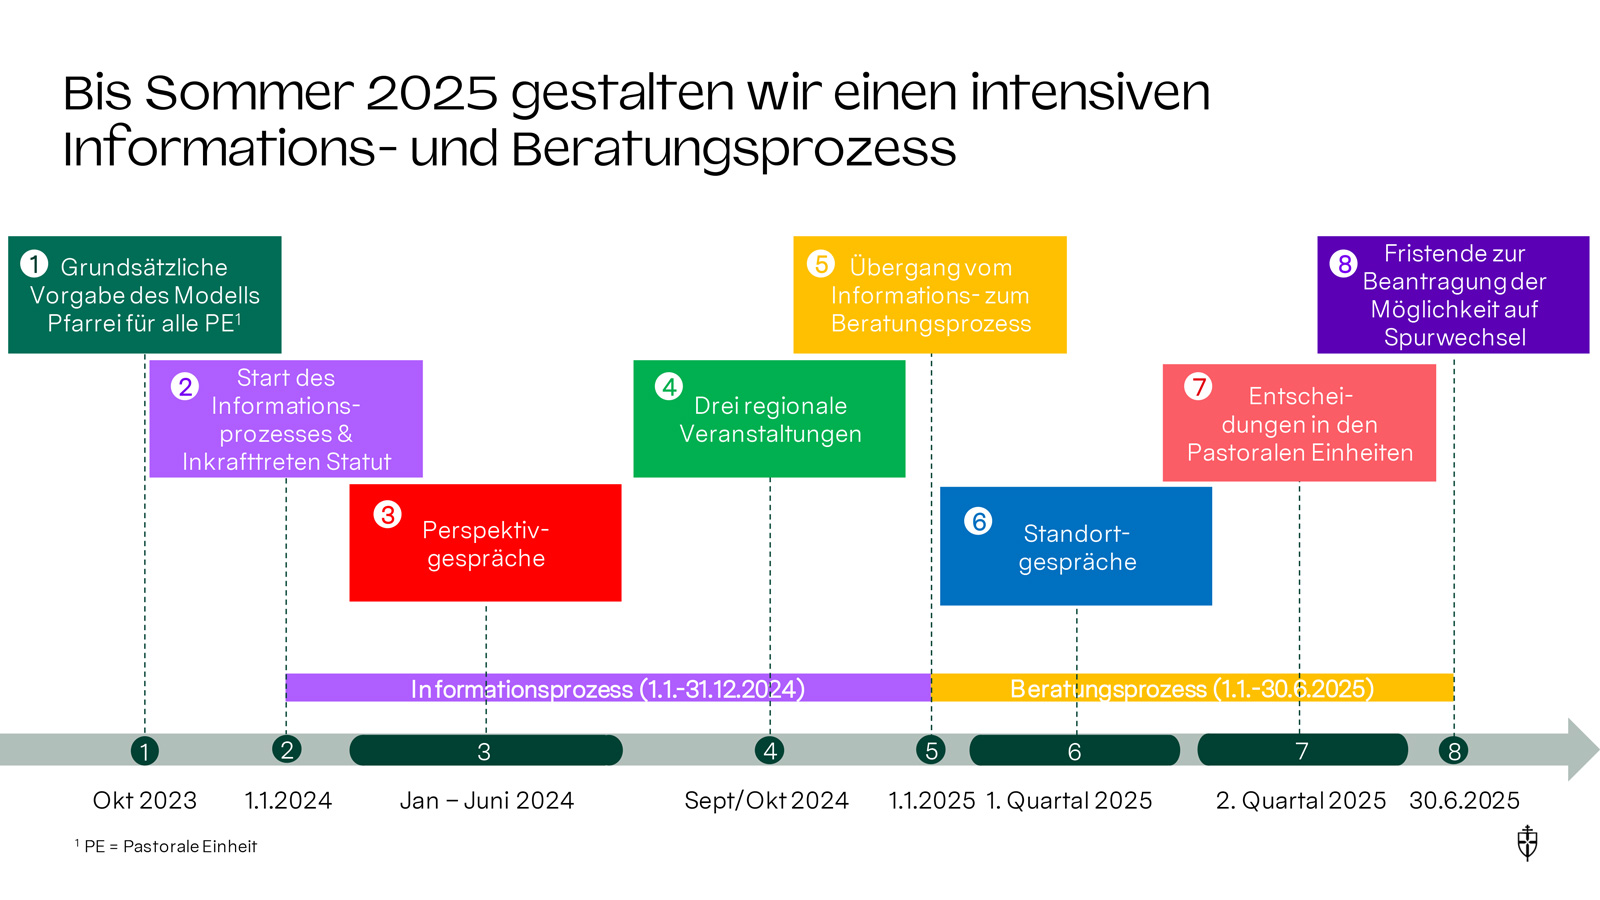 Bis Sommer 2025 gestalten wir einen intensiven Informations- und Beratungsprozess